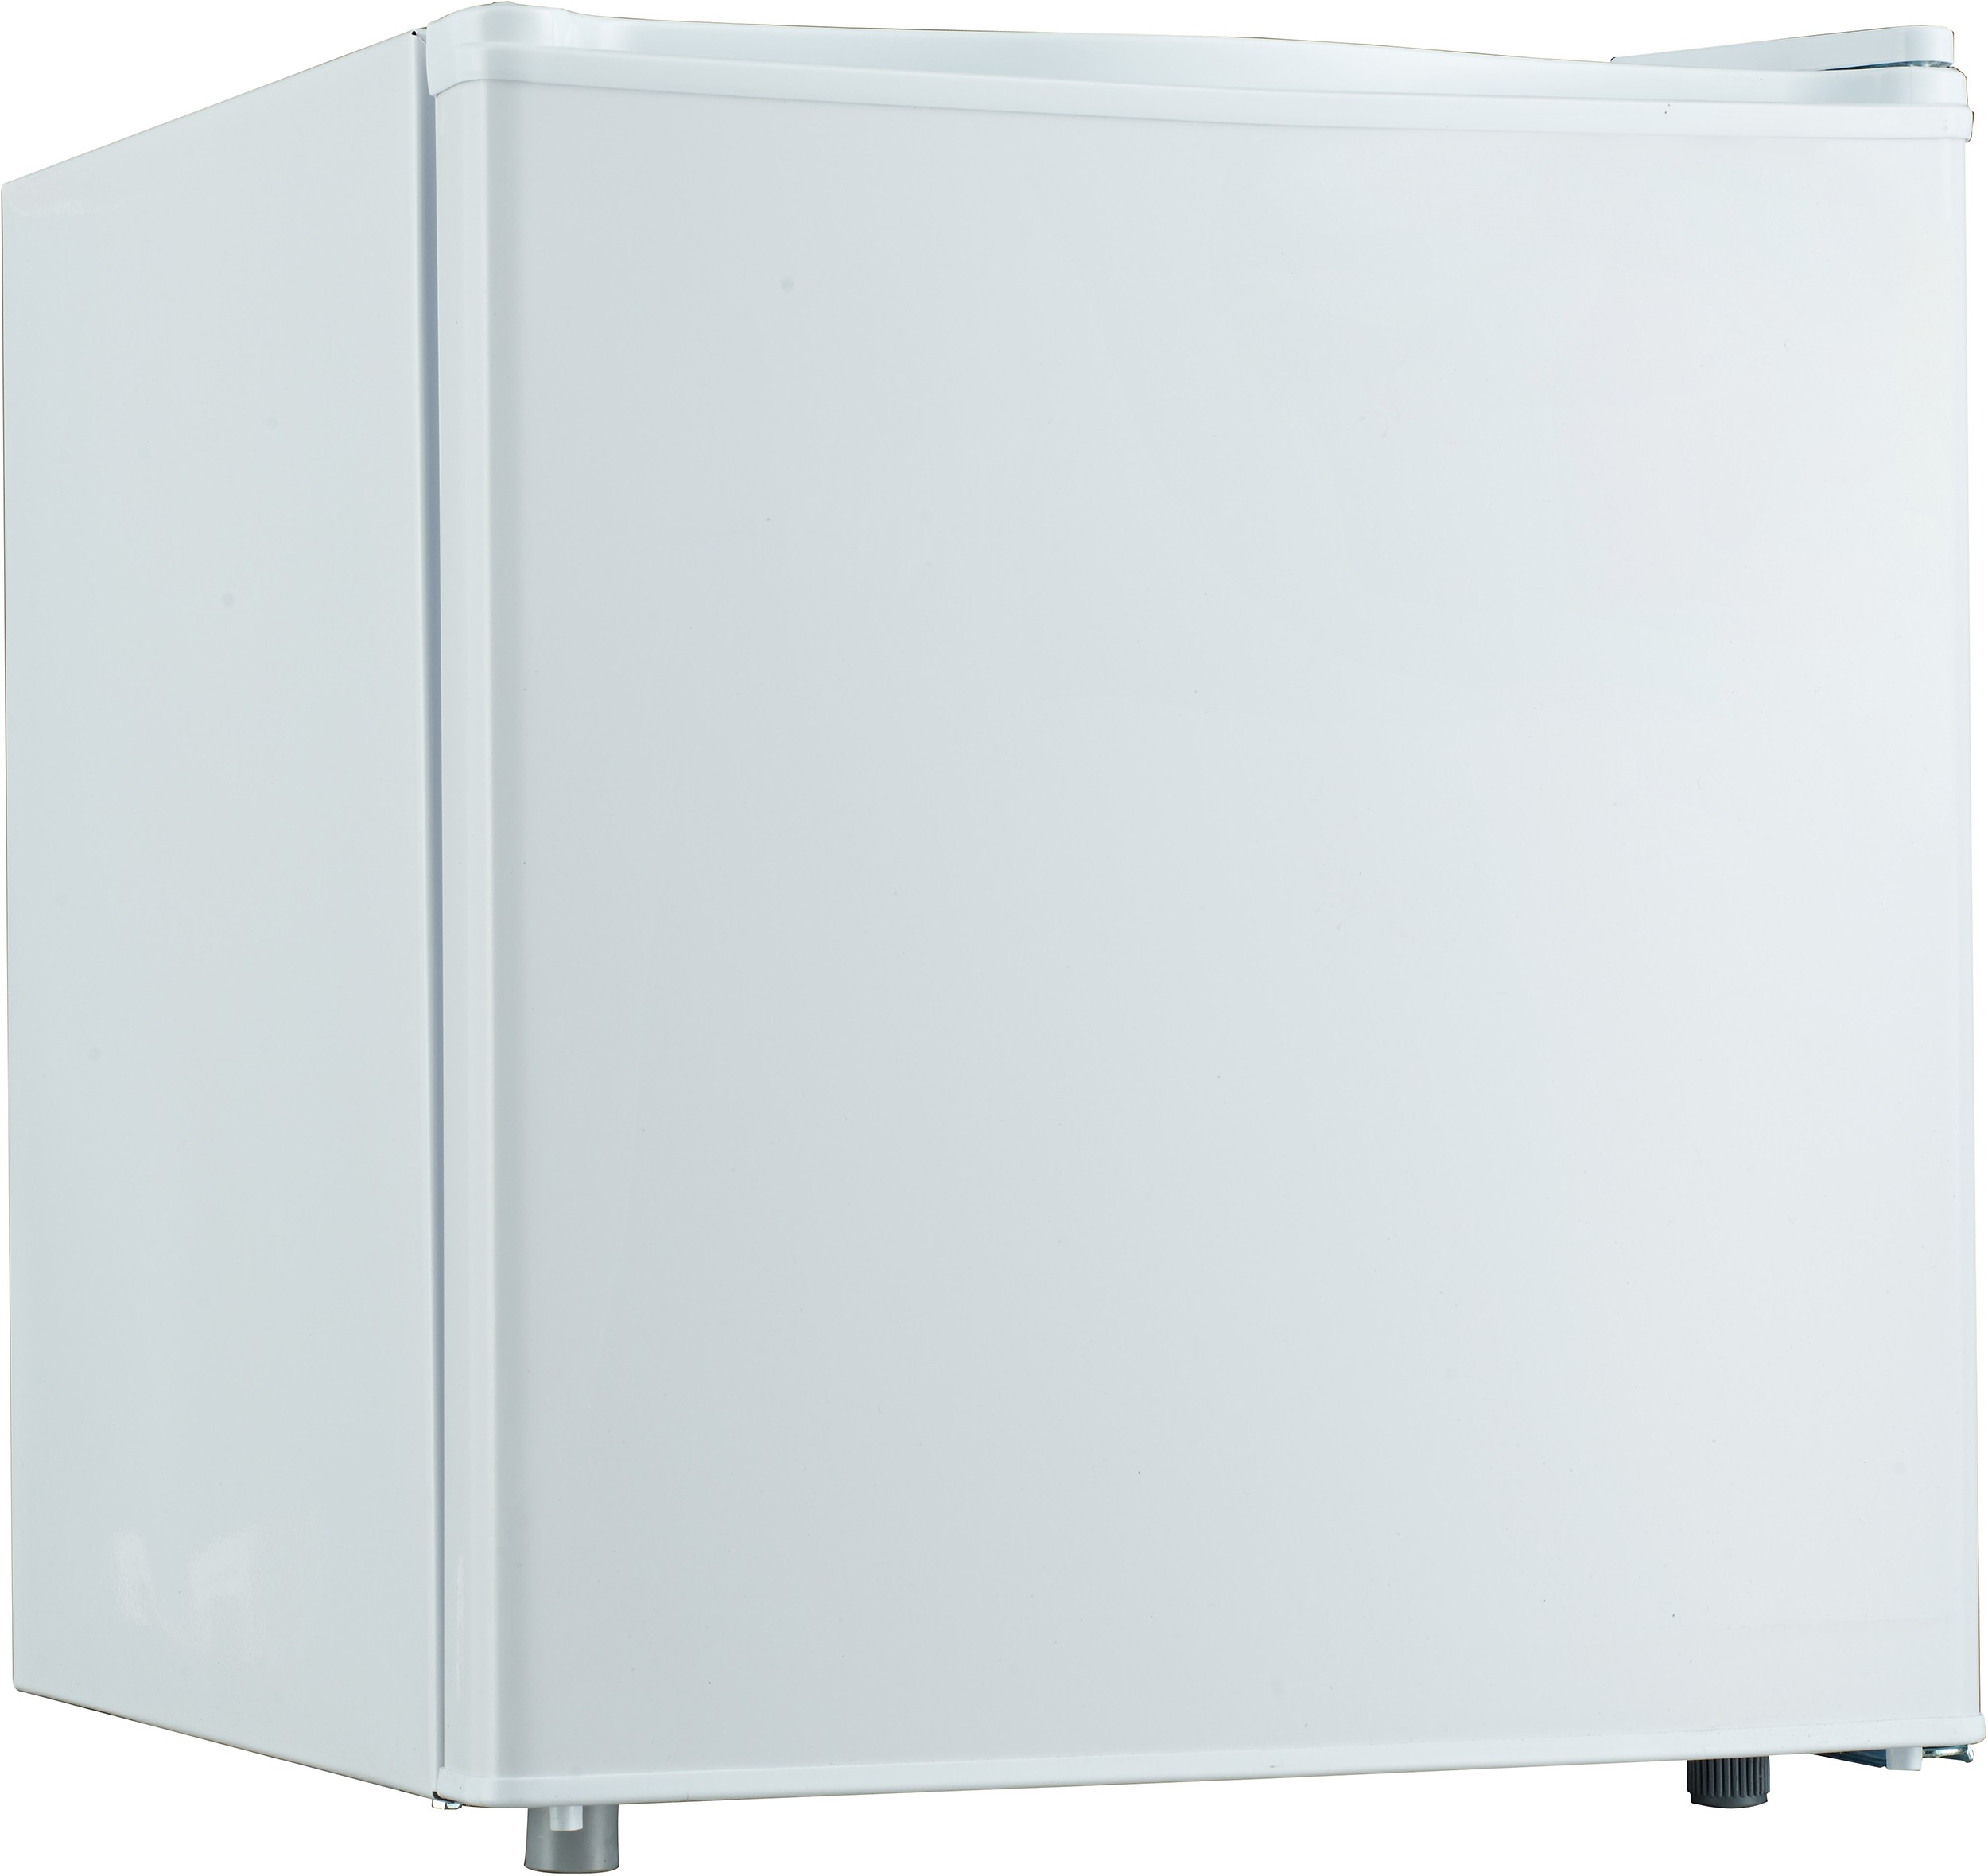 Réfrigérateur compact RCU46BE